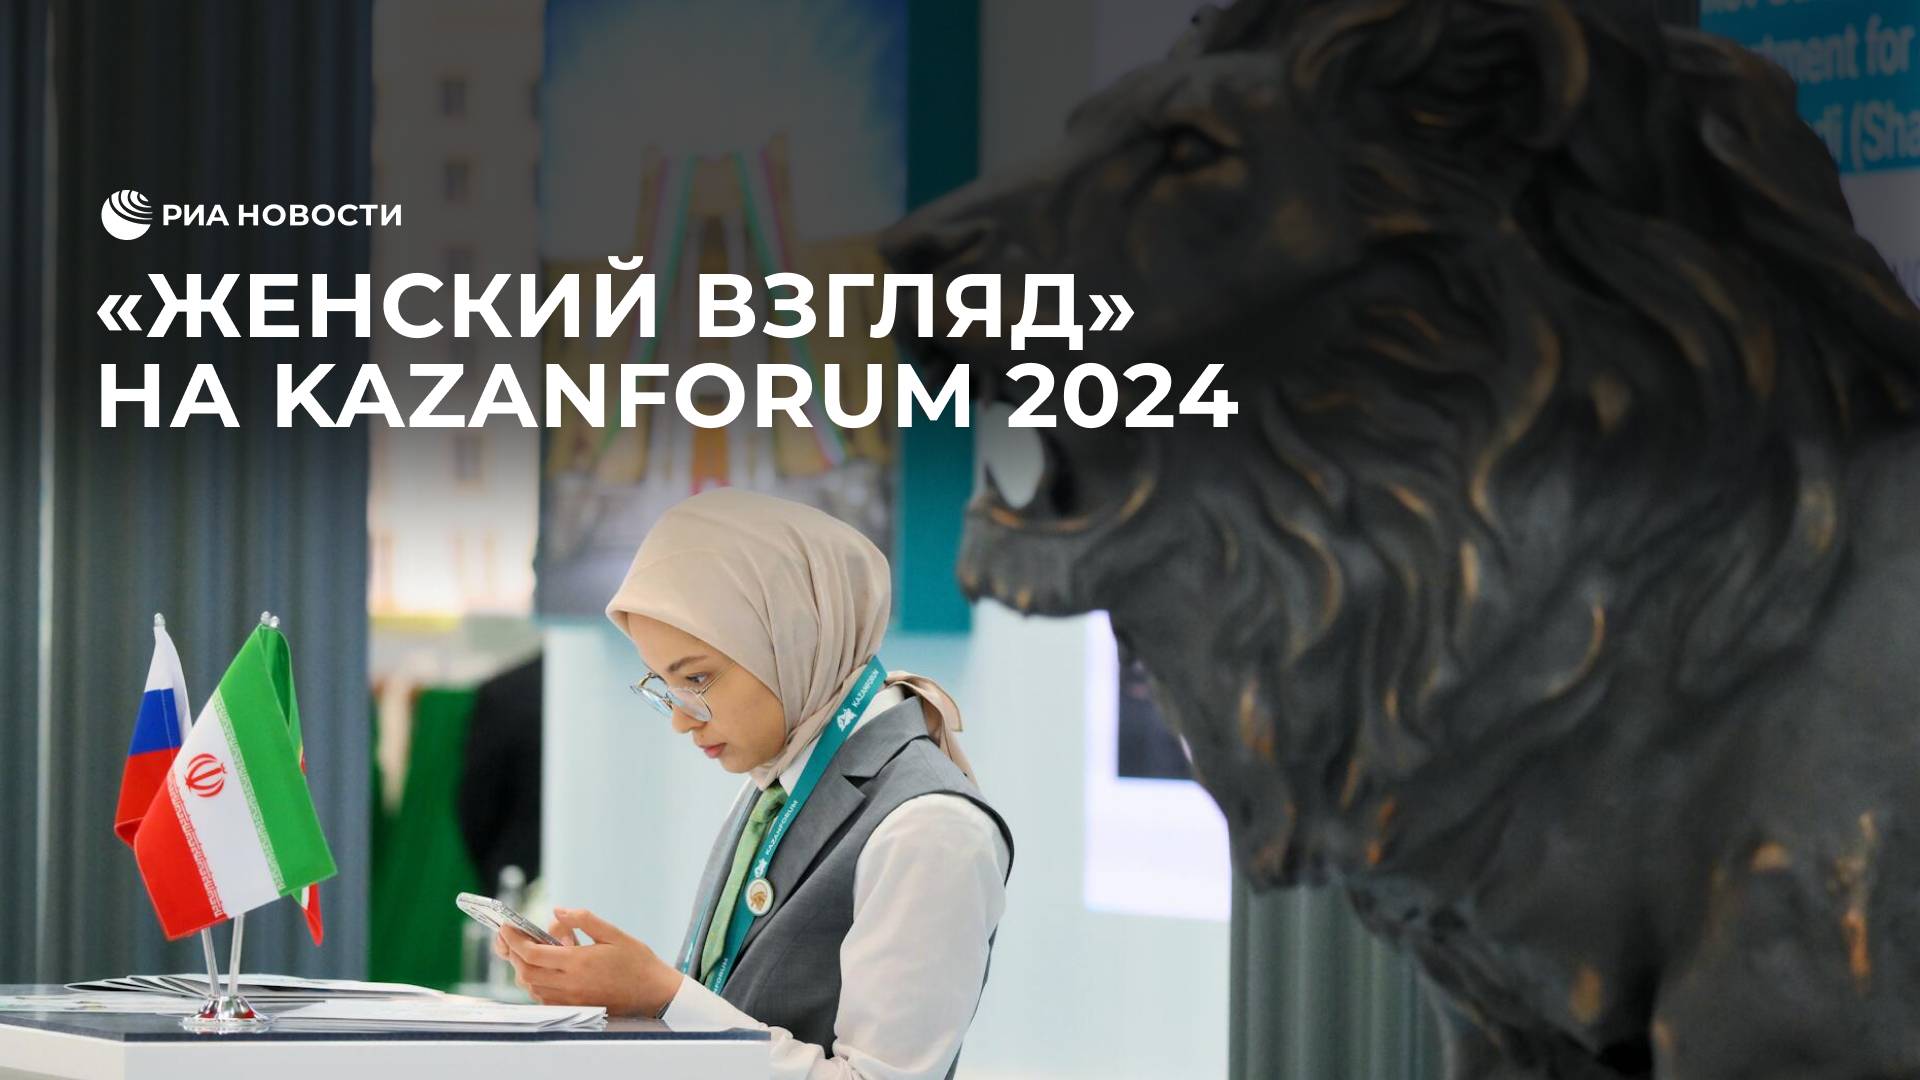 "Женский взгляд" на KazanForum 2024